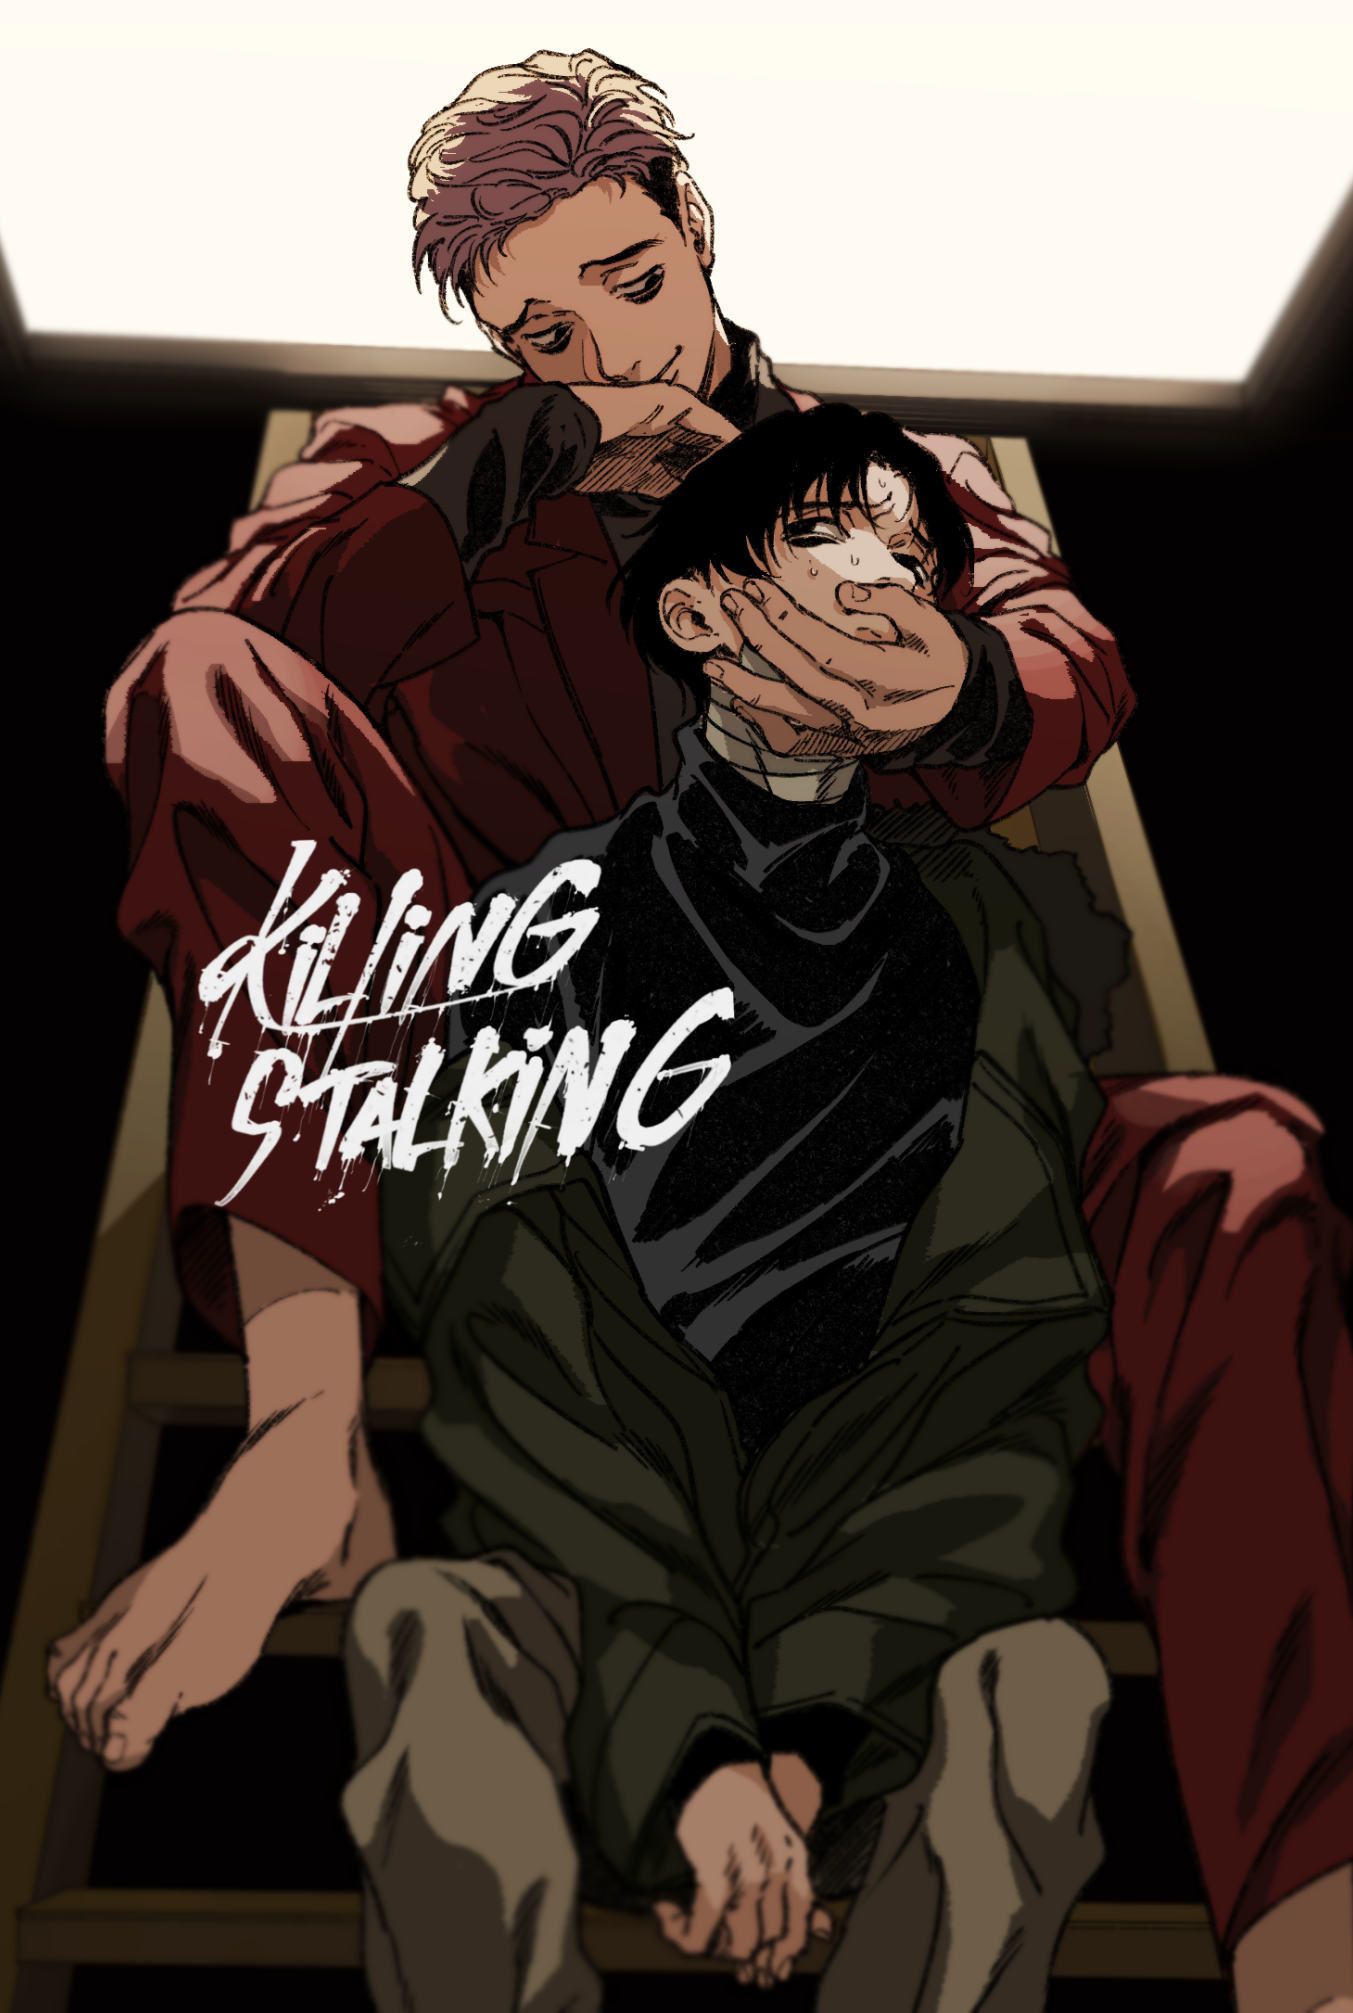 The Killing Stalking